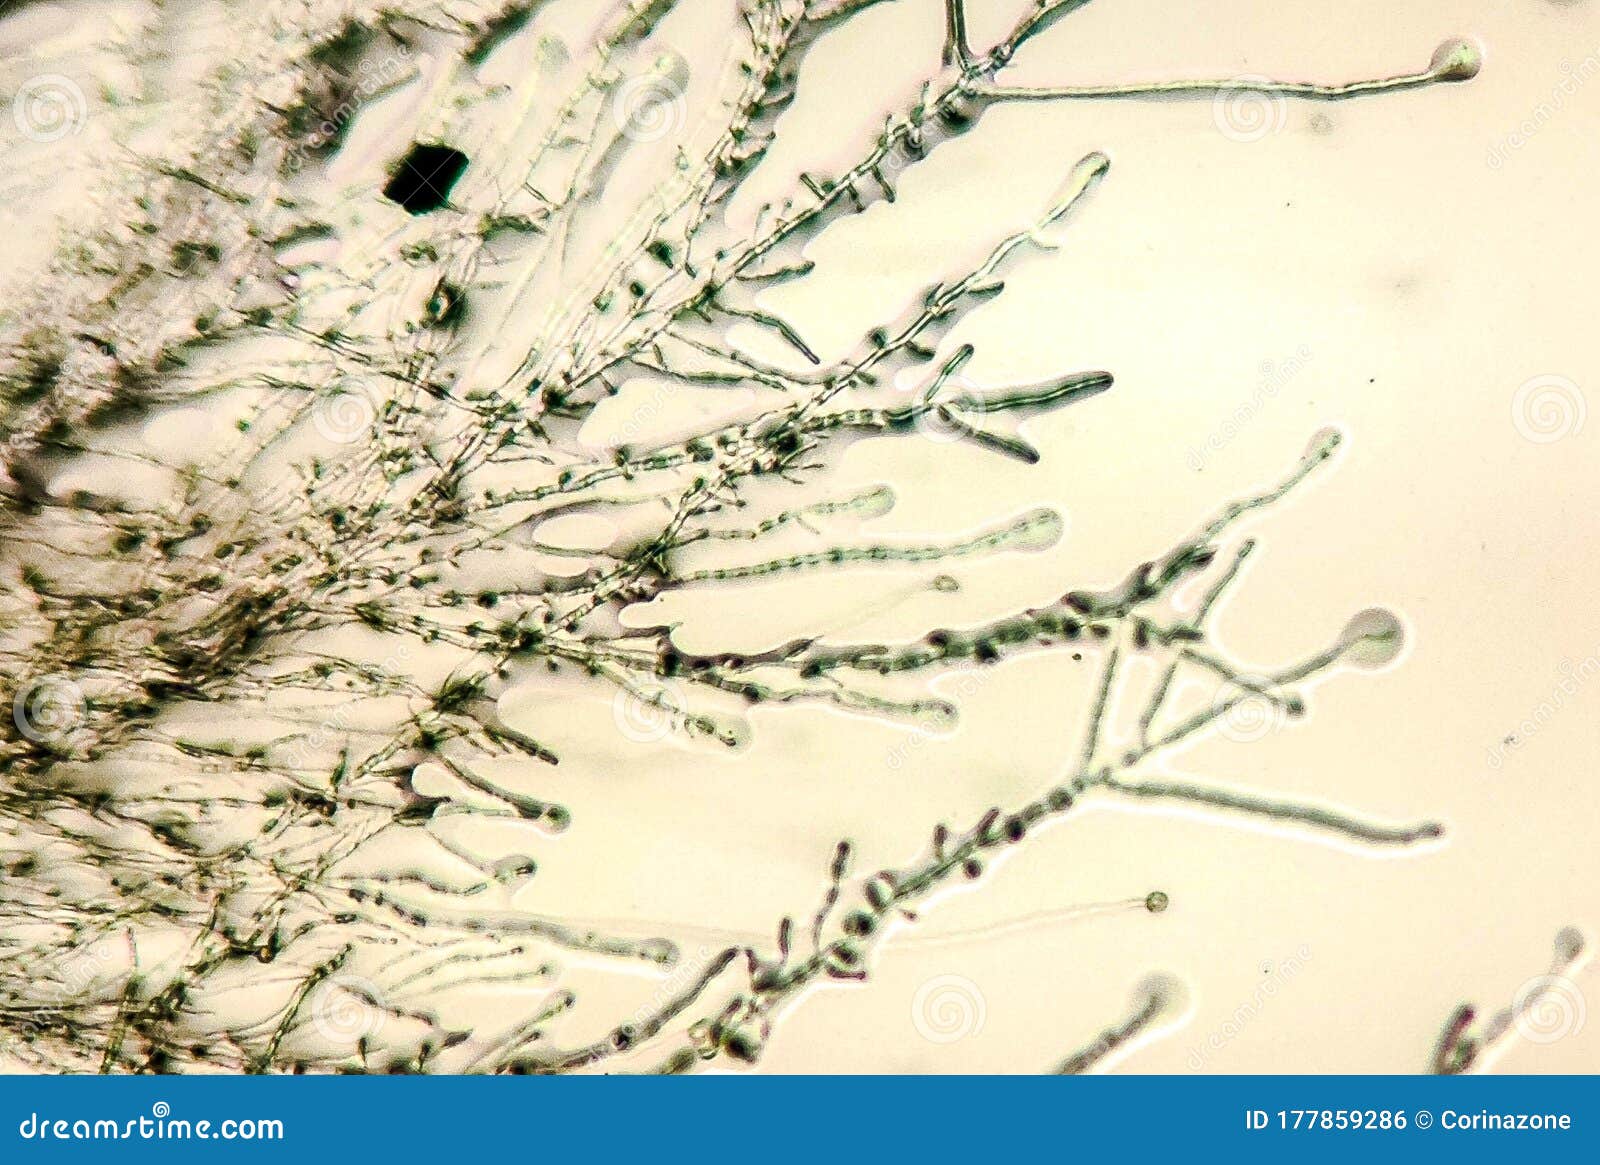 Грибок Dermatophyte под микроскопом Стоковое Фото - изображениенасчитывающей микроскоп, колония: 177859286